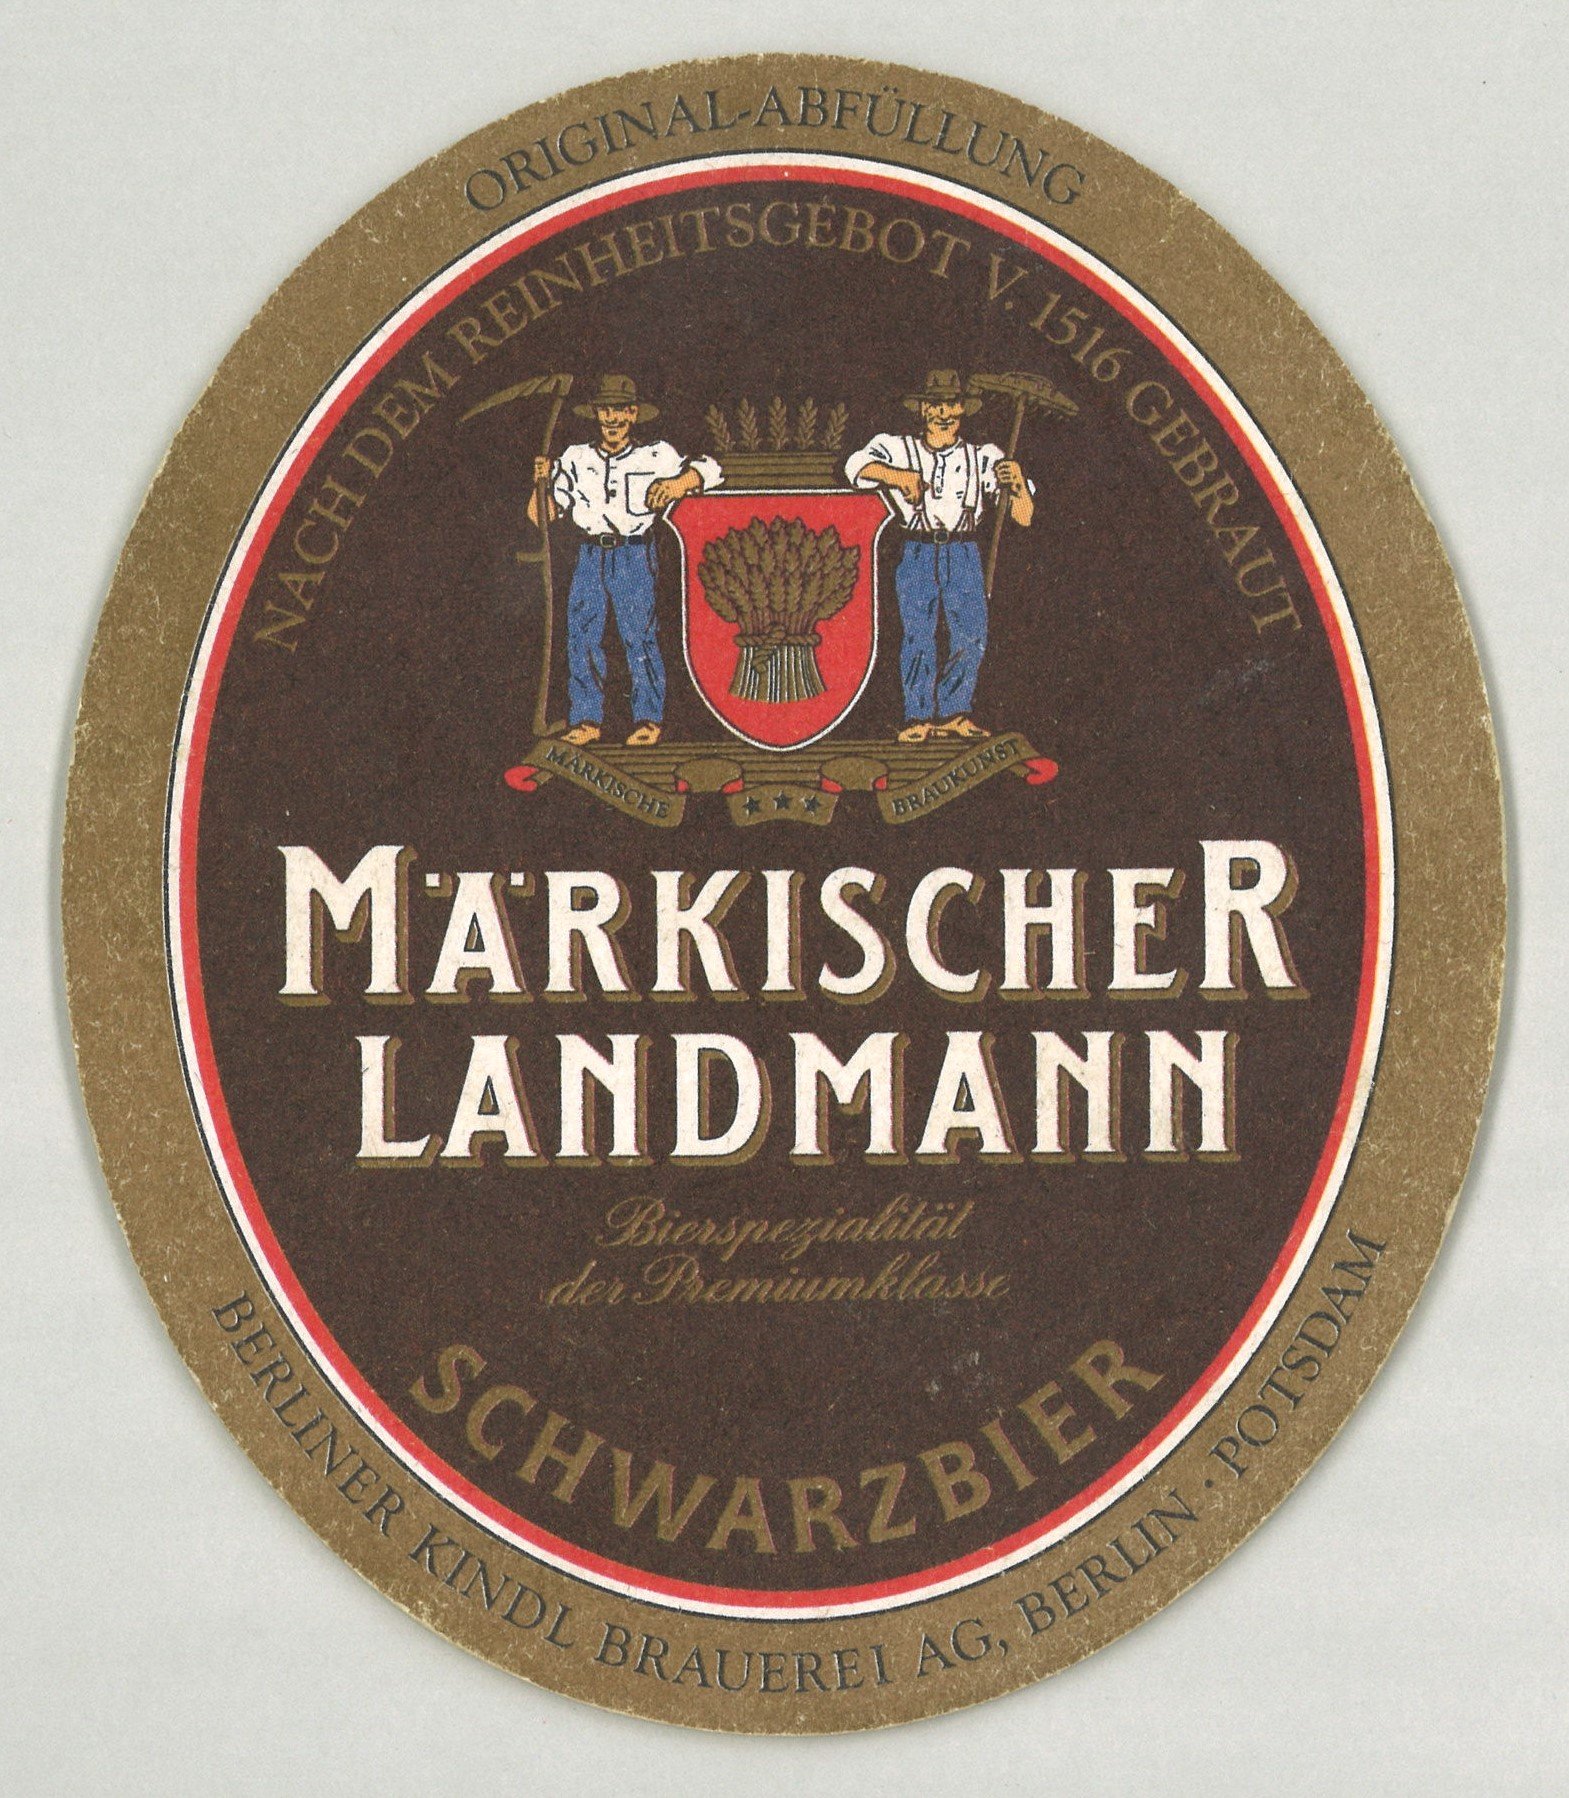 Berlin/Potsdam, Berliner Kindl Brauerei AG: Märkischer Landmann (Landesgeschichtliche Vereinigung für die Mark Brandenburg e.V., Archiv CC BY)